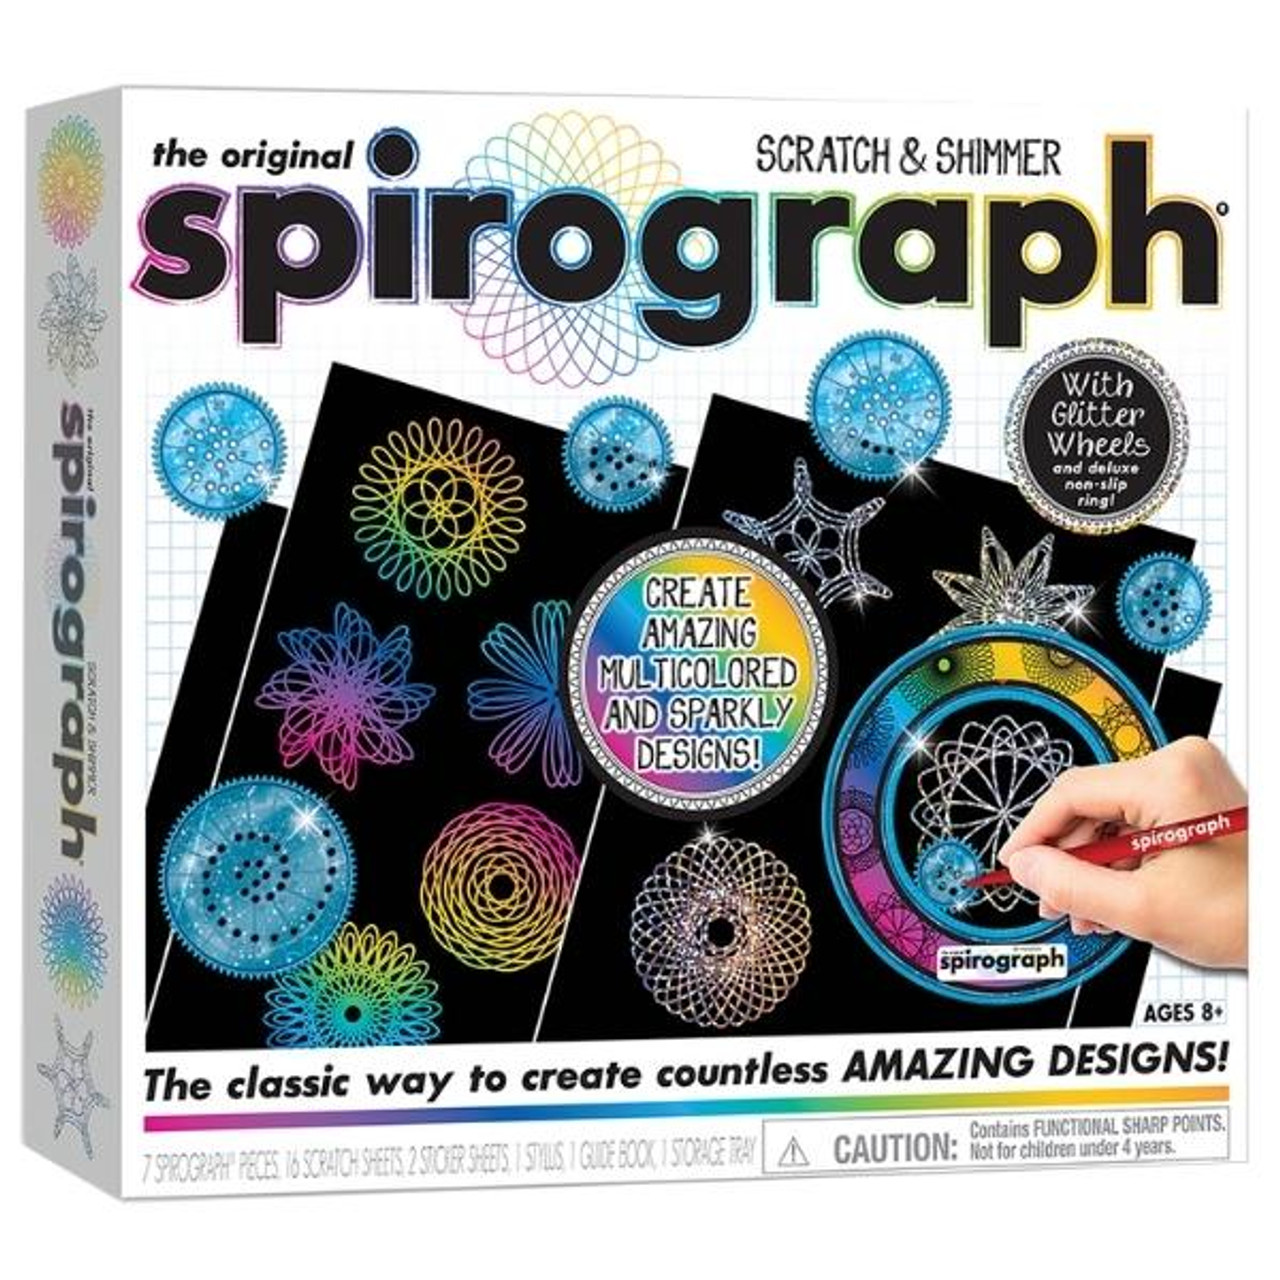 Spirograph Keychain